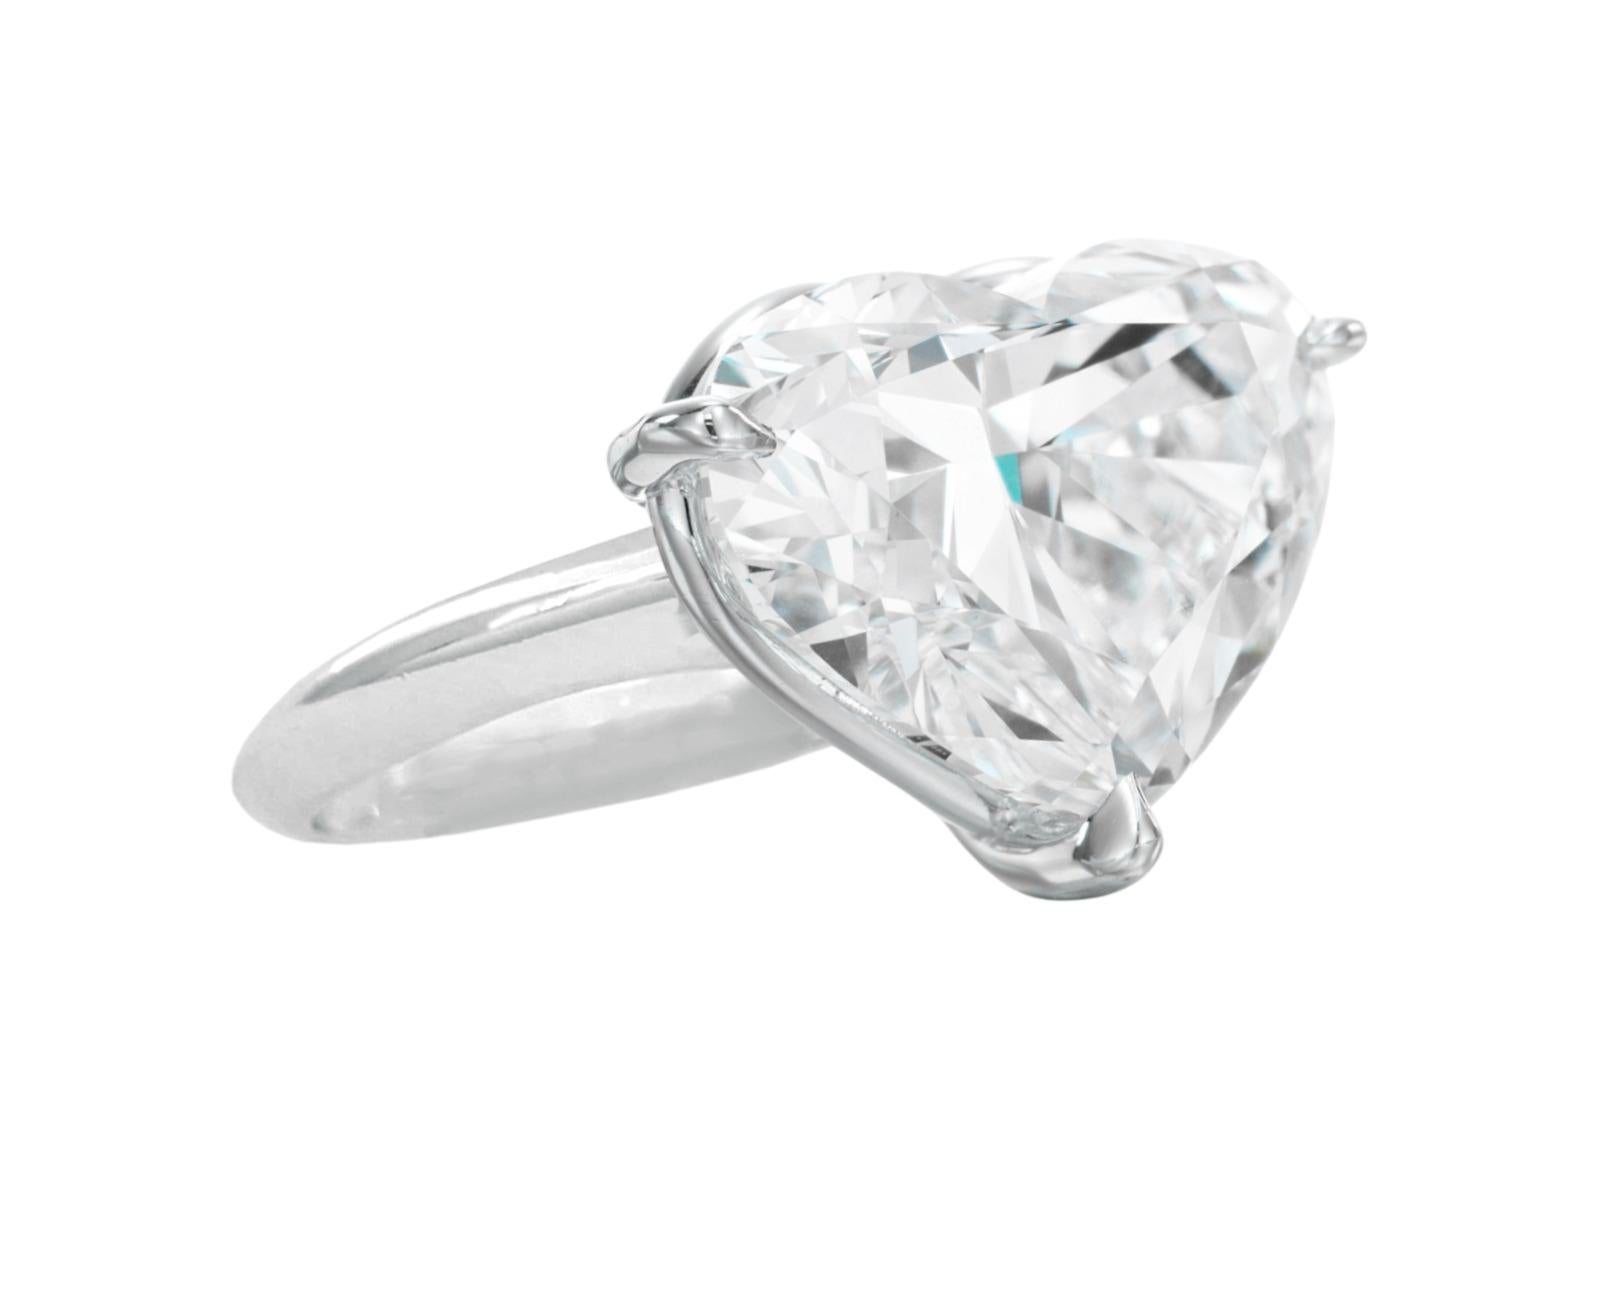 Cet étonnant diamant de 5 carats en forme de cœur est serti dans du platine massif fabriqué en Italie par nos meilleurs artisans. 

la pierre a été certifiée par le GIA